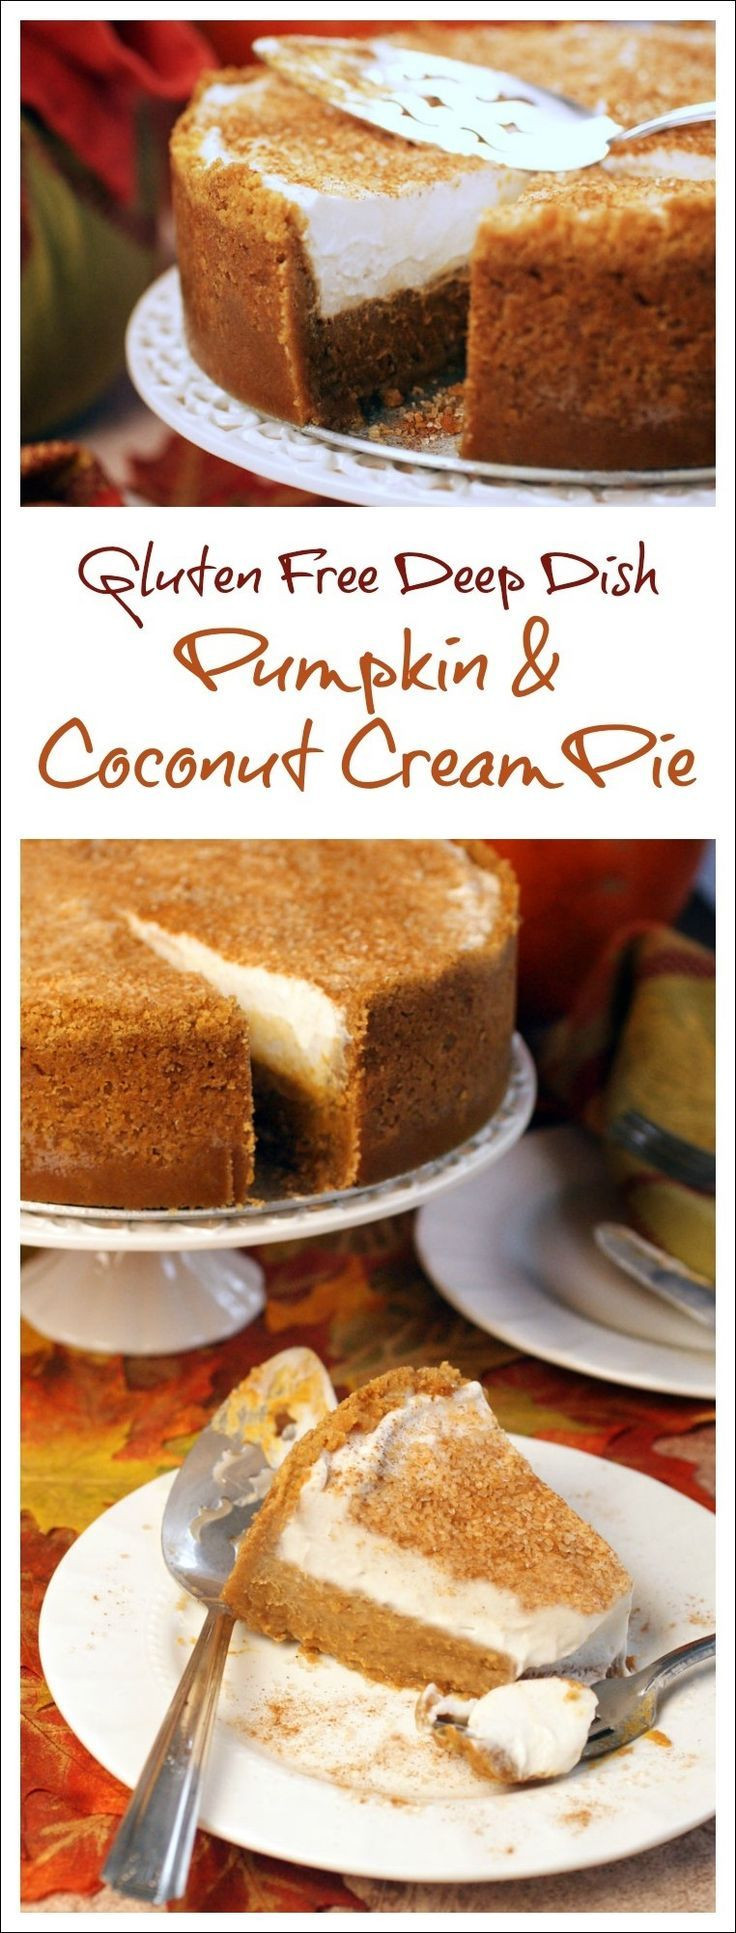 Dairy Free Pie Recipes
 Gluten Free Deep Dish Pumpkin & Coconut Cream Pie